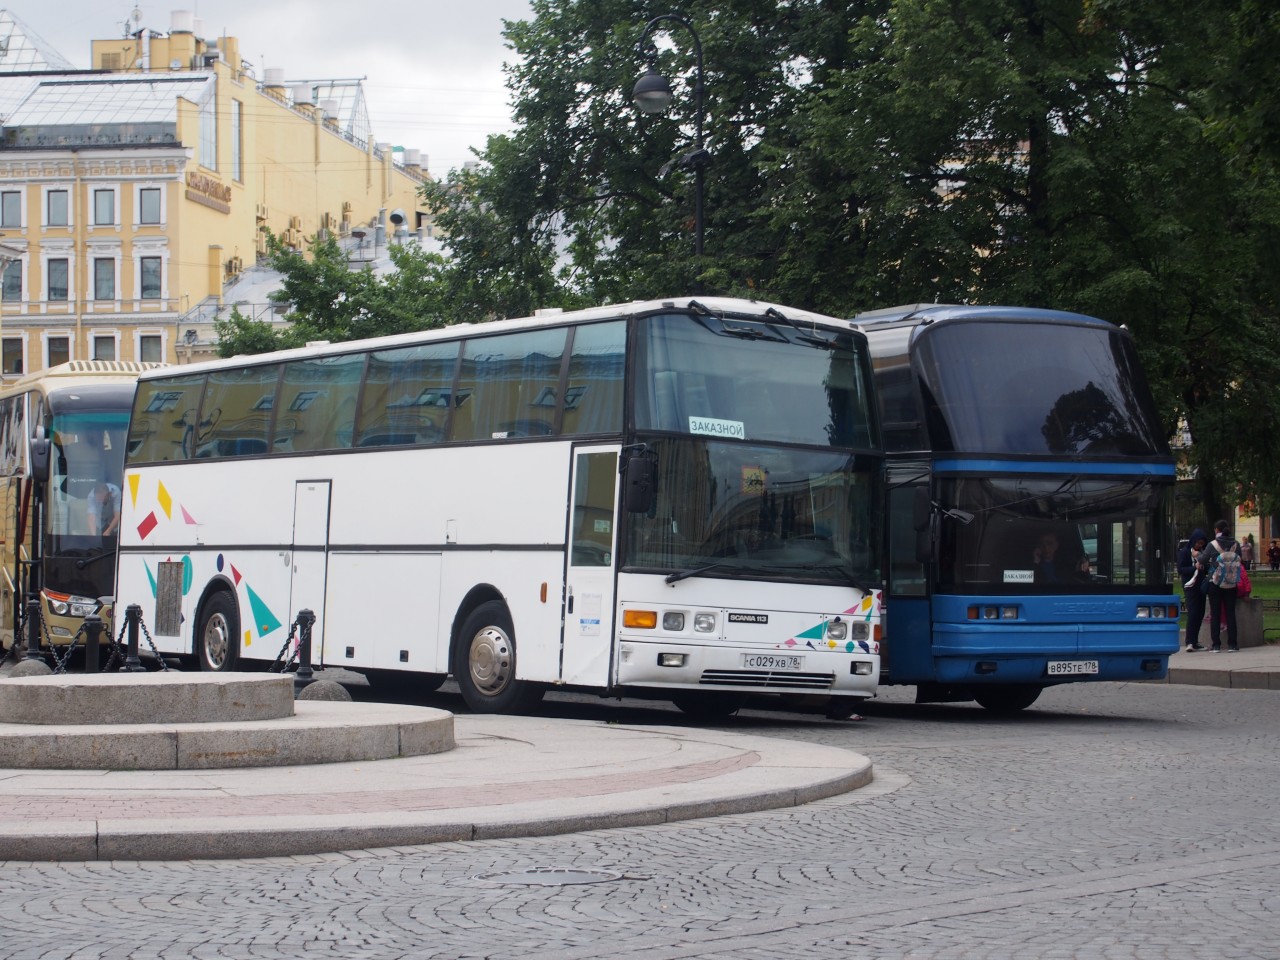 Групповые экскурсионные туры в РФ подорожали из-за роста цен на аренду автобусов